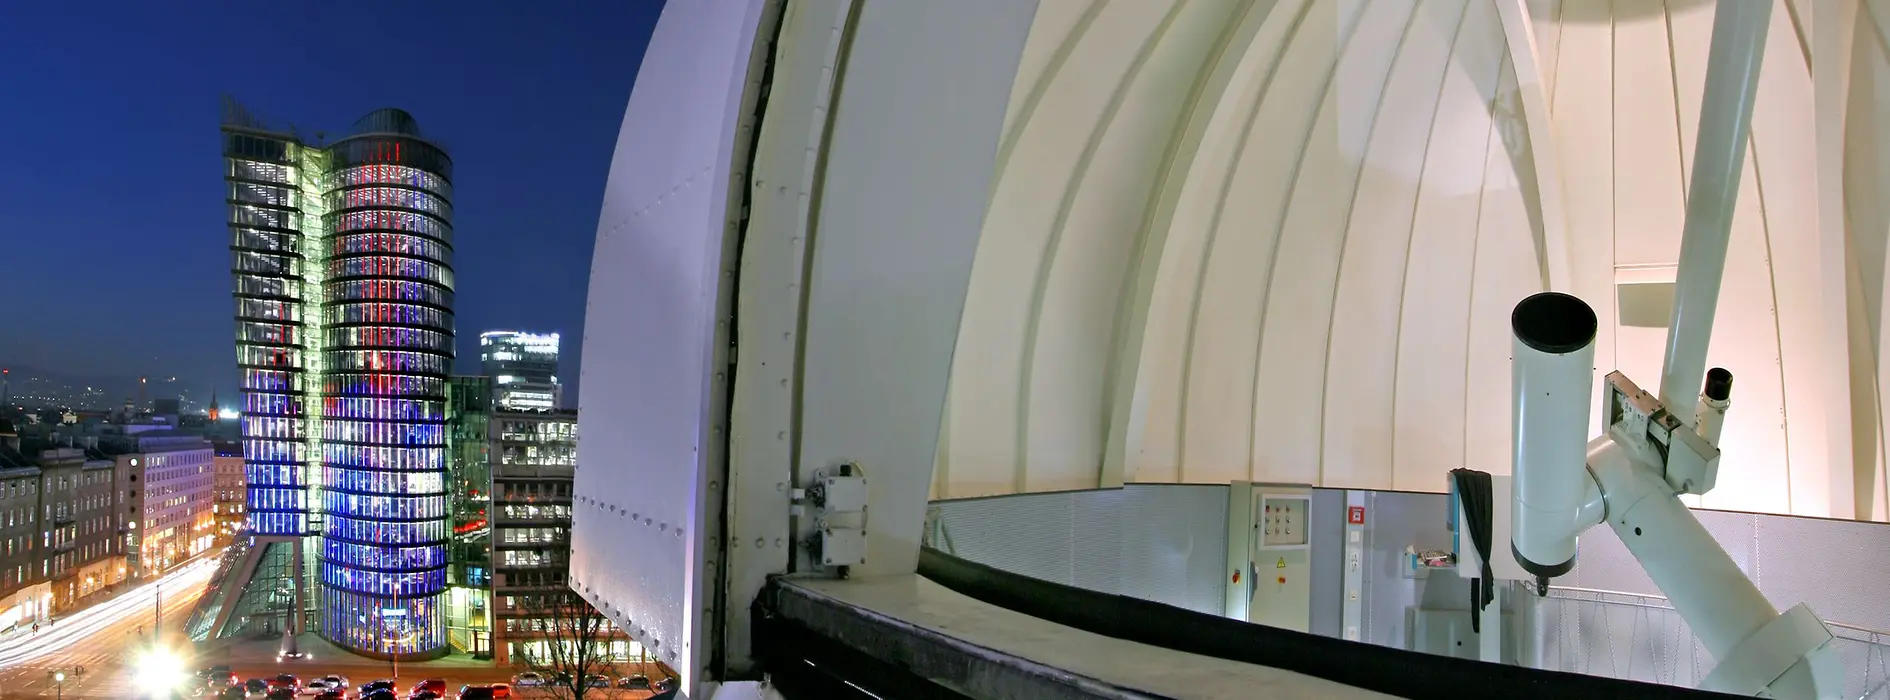 ウラニア天文台